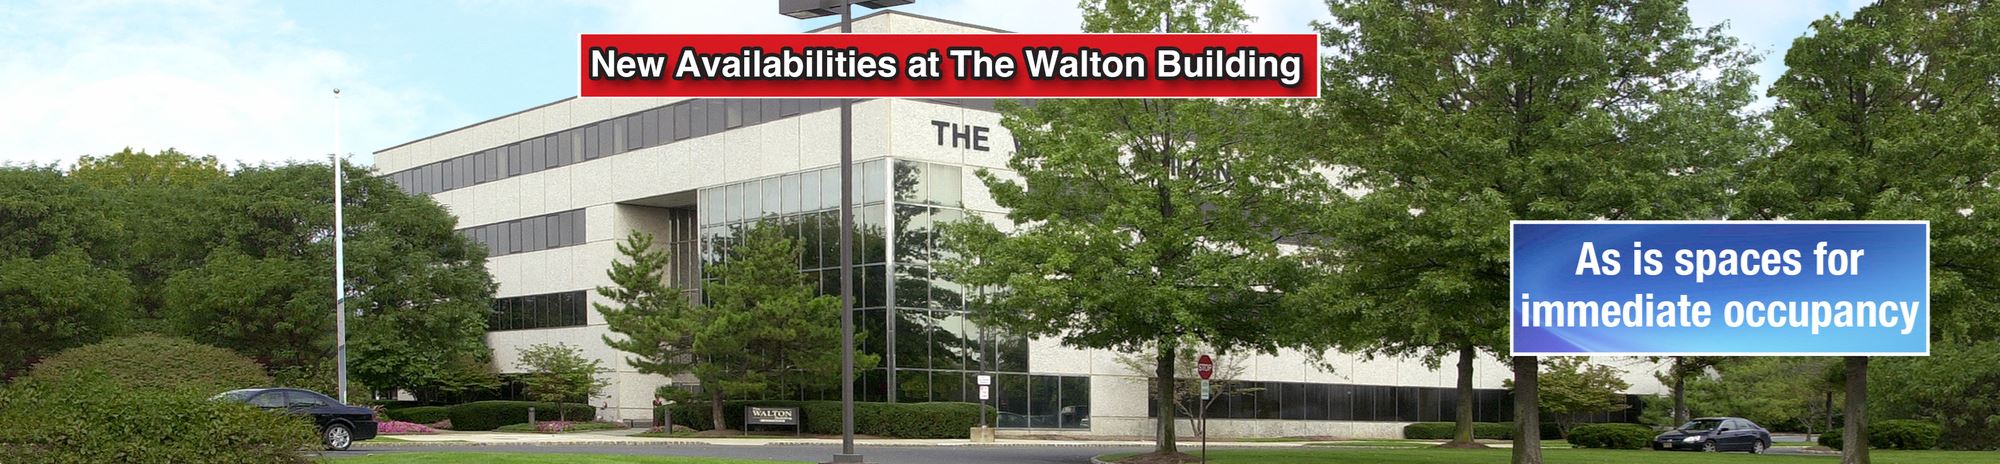 The Walton Building